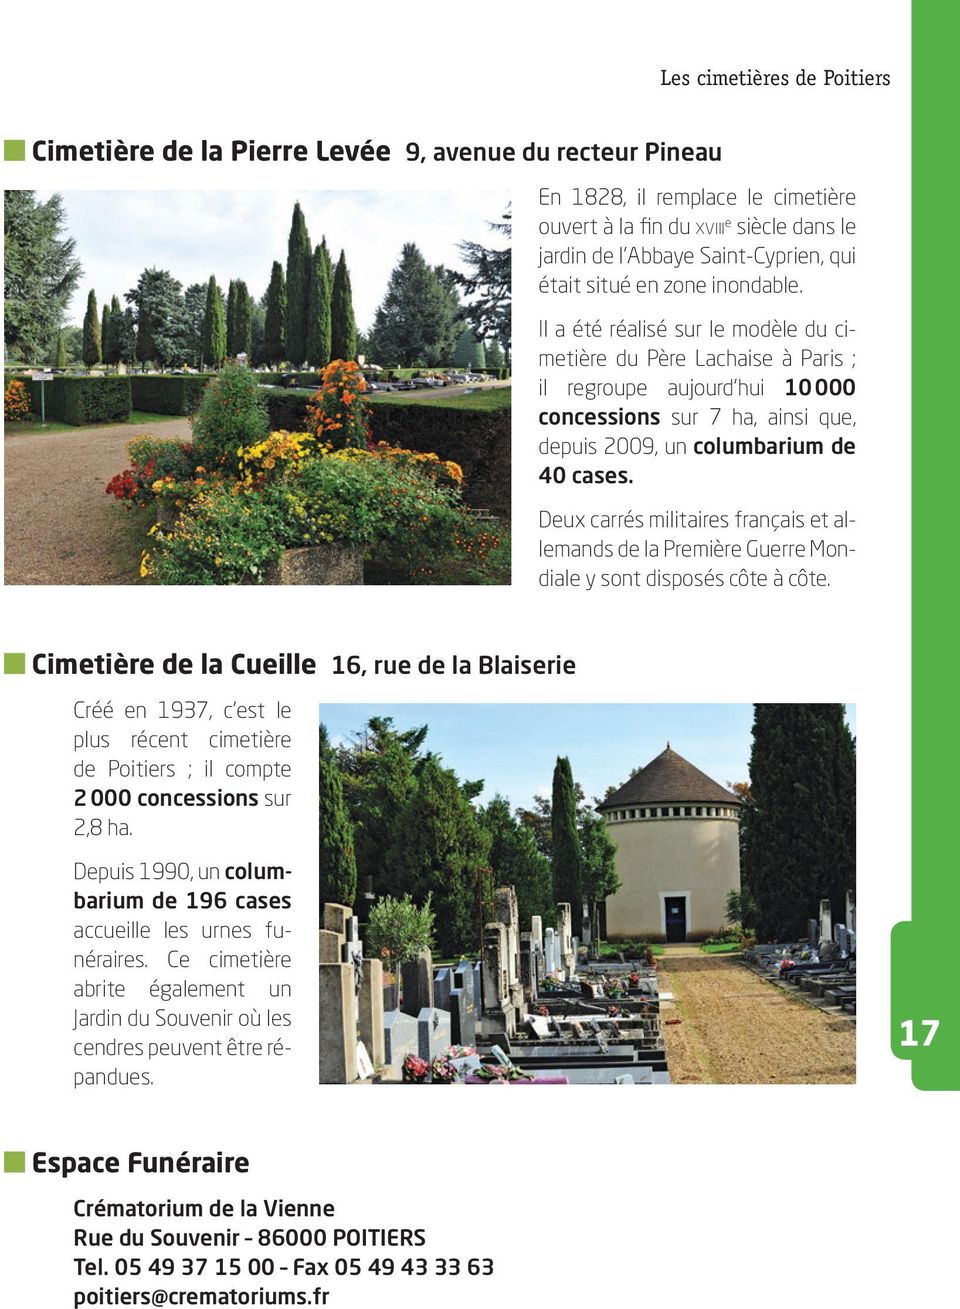 Il a été réalisé sur le modèle du cimetière du Père Lachaise à Paris ; il regroupe aujourd hui 10 000 concessions sur 7 ha, ainsi que, depuis 2009, un columbarium de 40 cases.